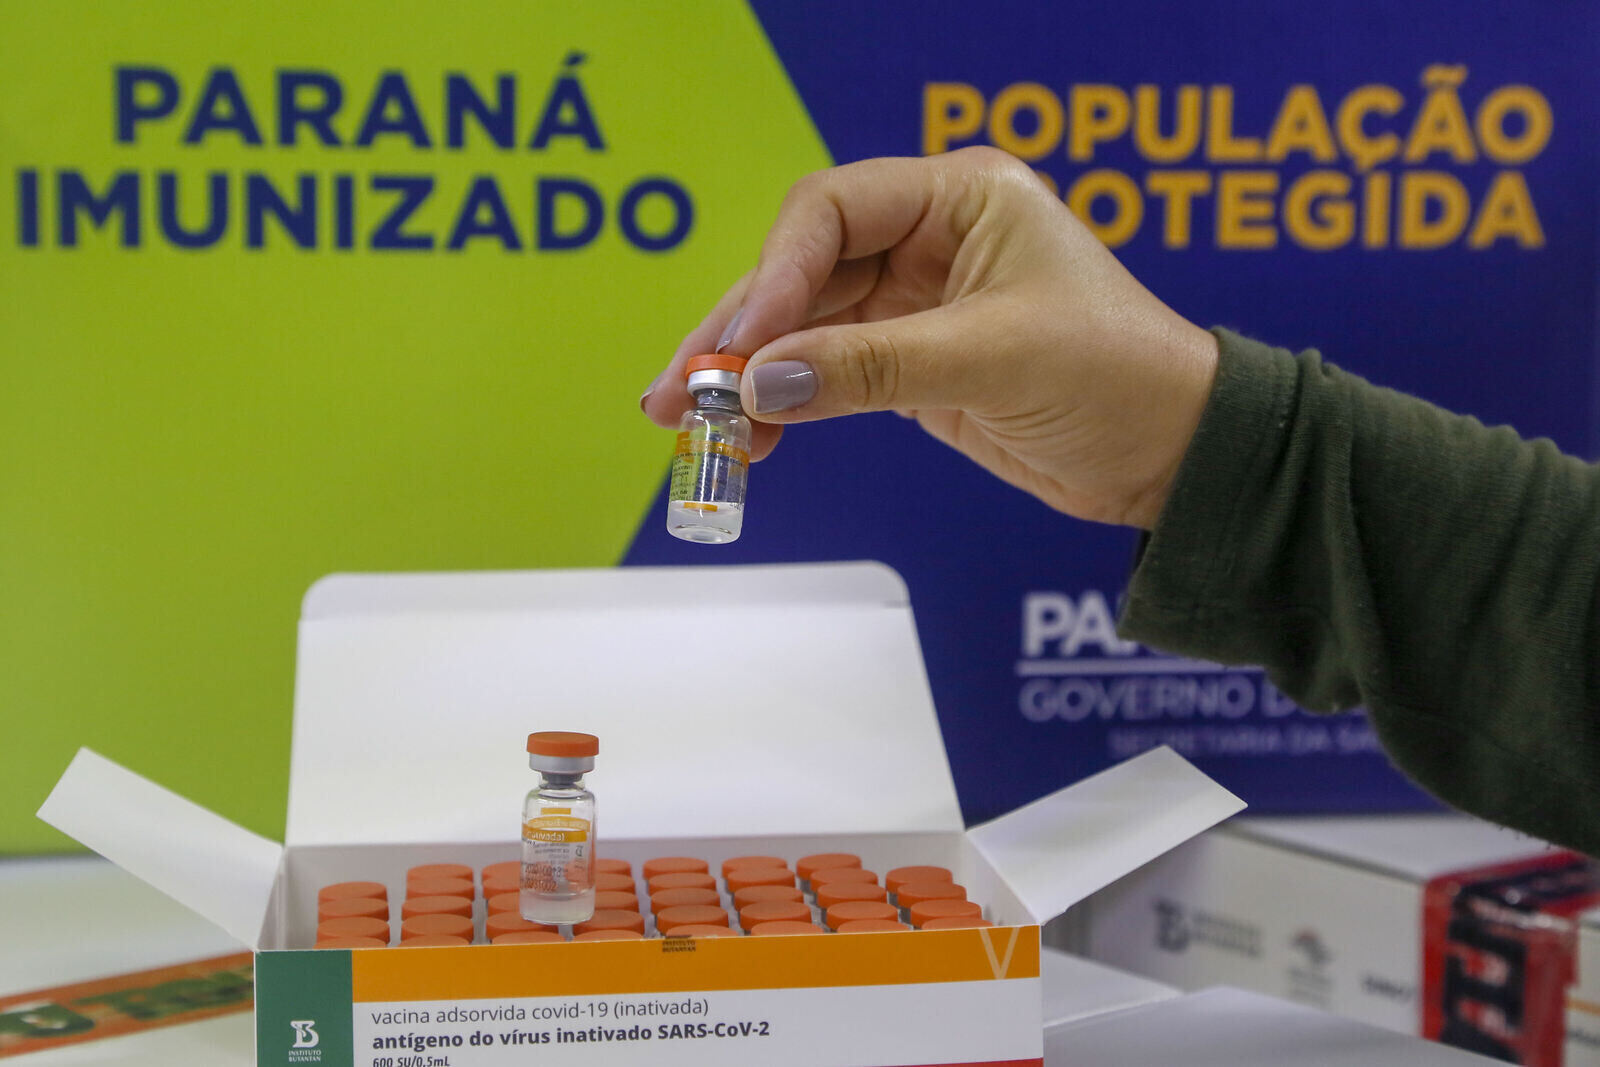 Paraná imunizado, distrubuição das vacinas para regionais de saúde no Cemepar
Foto: Gilson Abreu/AEN